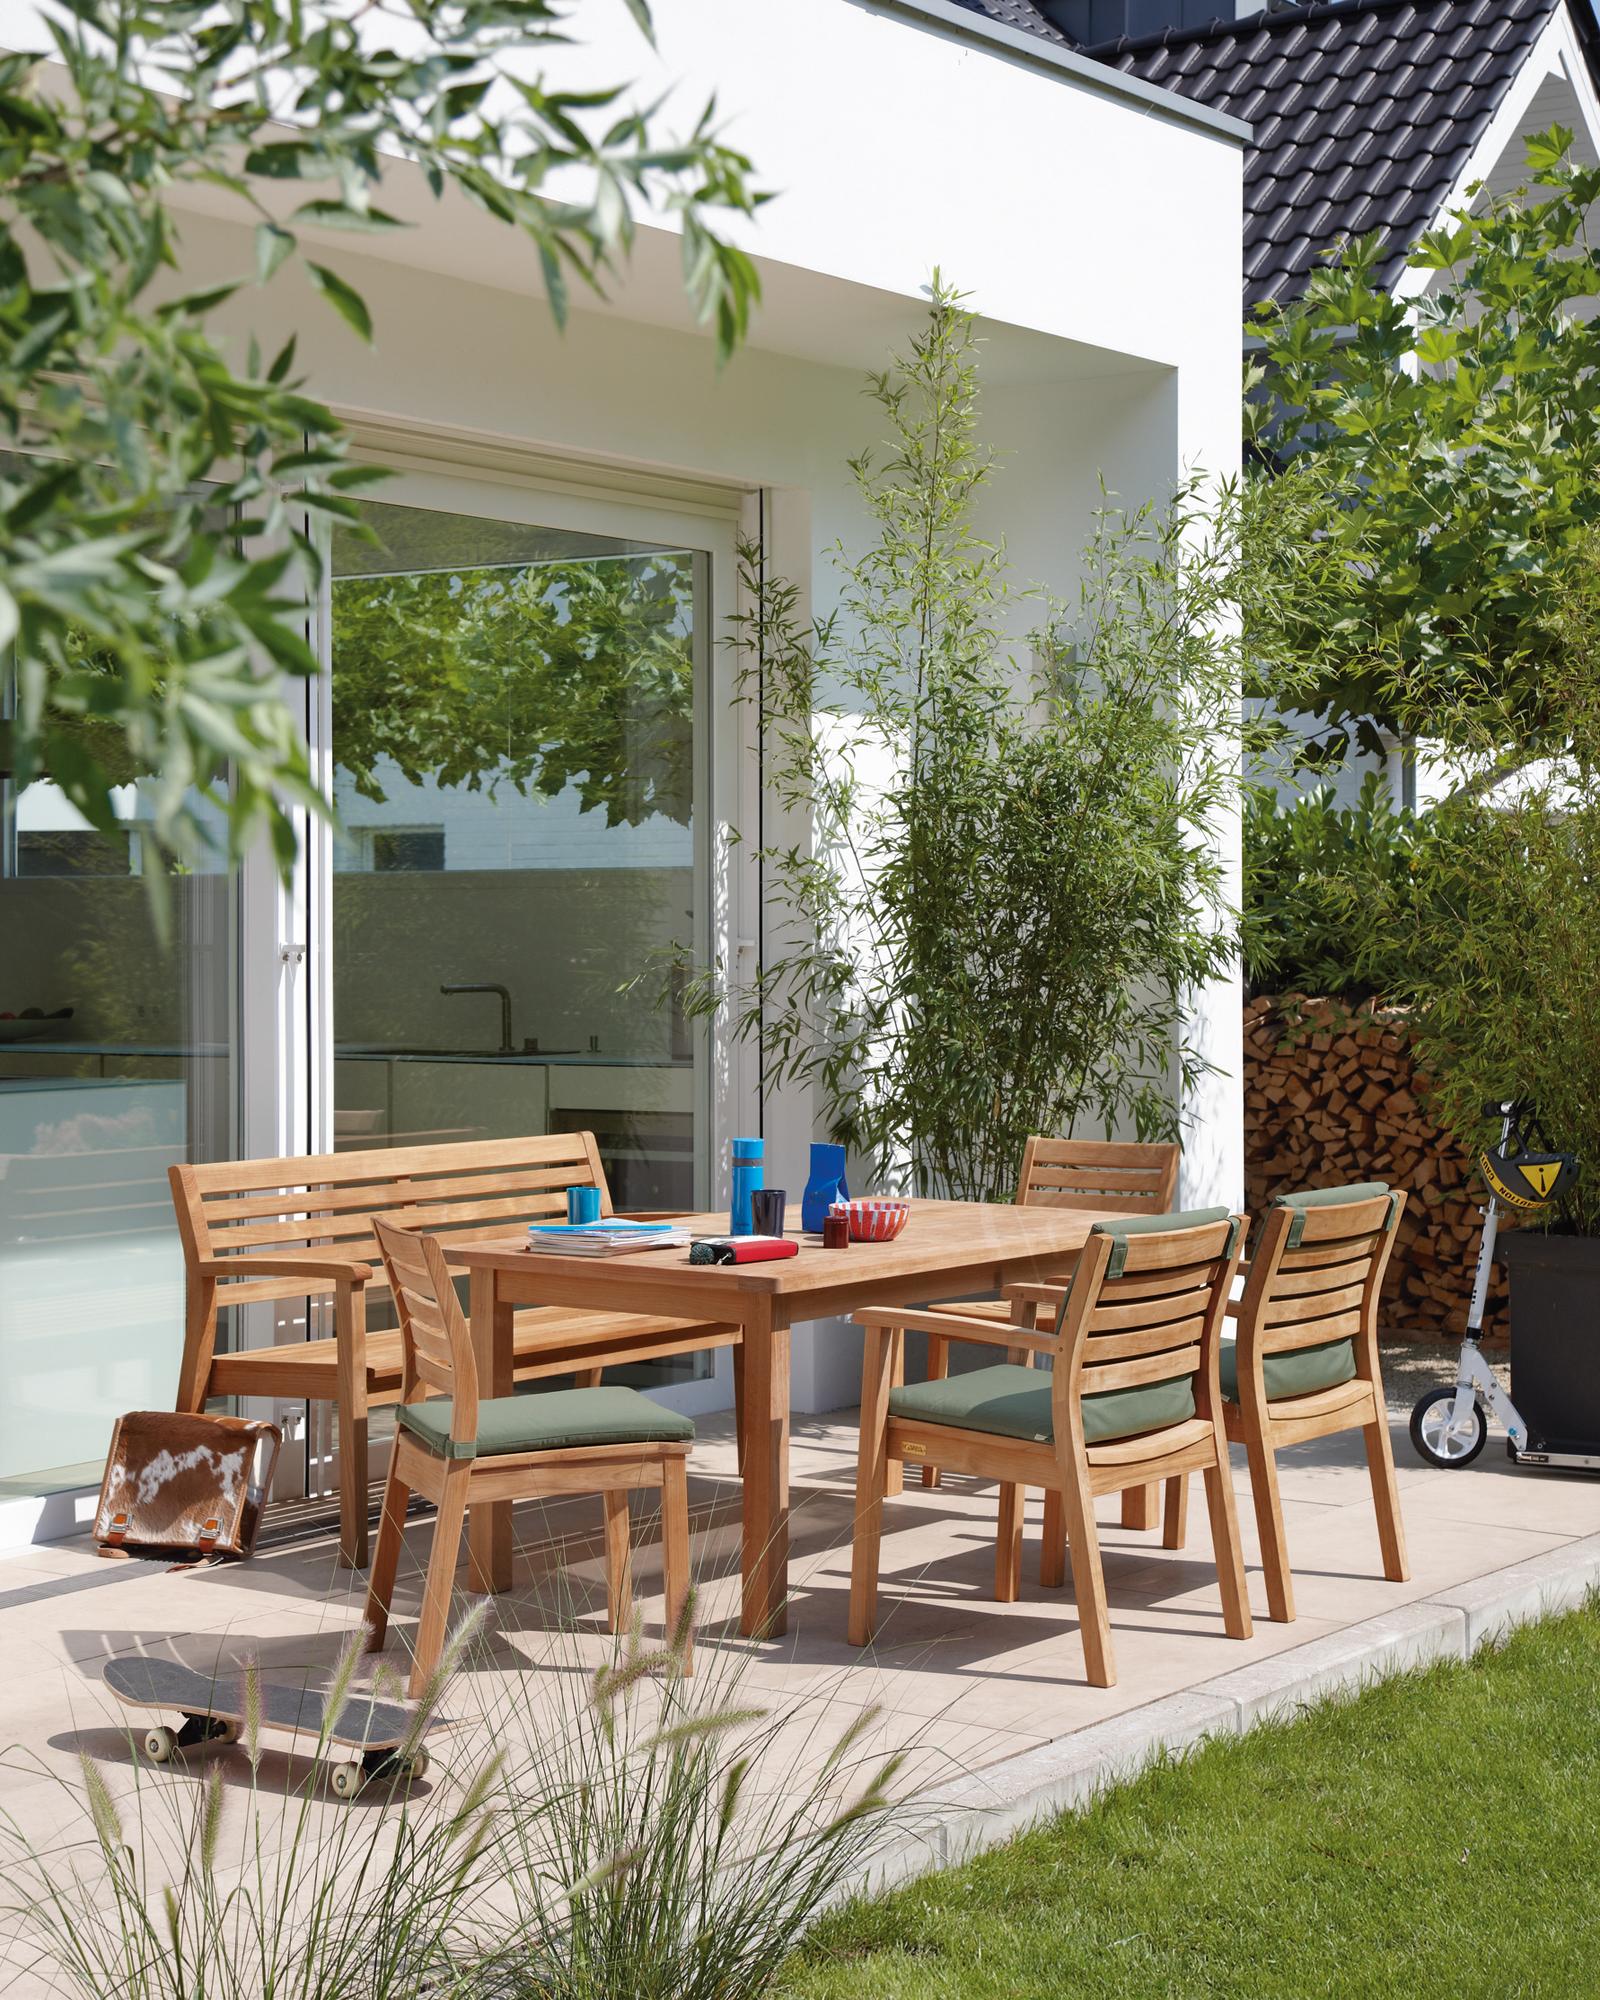 Outdoor-Möbel aus Holz #stuhl #terrasse #esstisch #holzbank #holzstuhl #gartenmöbel #sitzbank #sitzecke ©Garpa